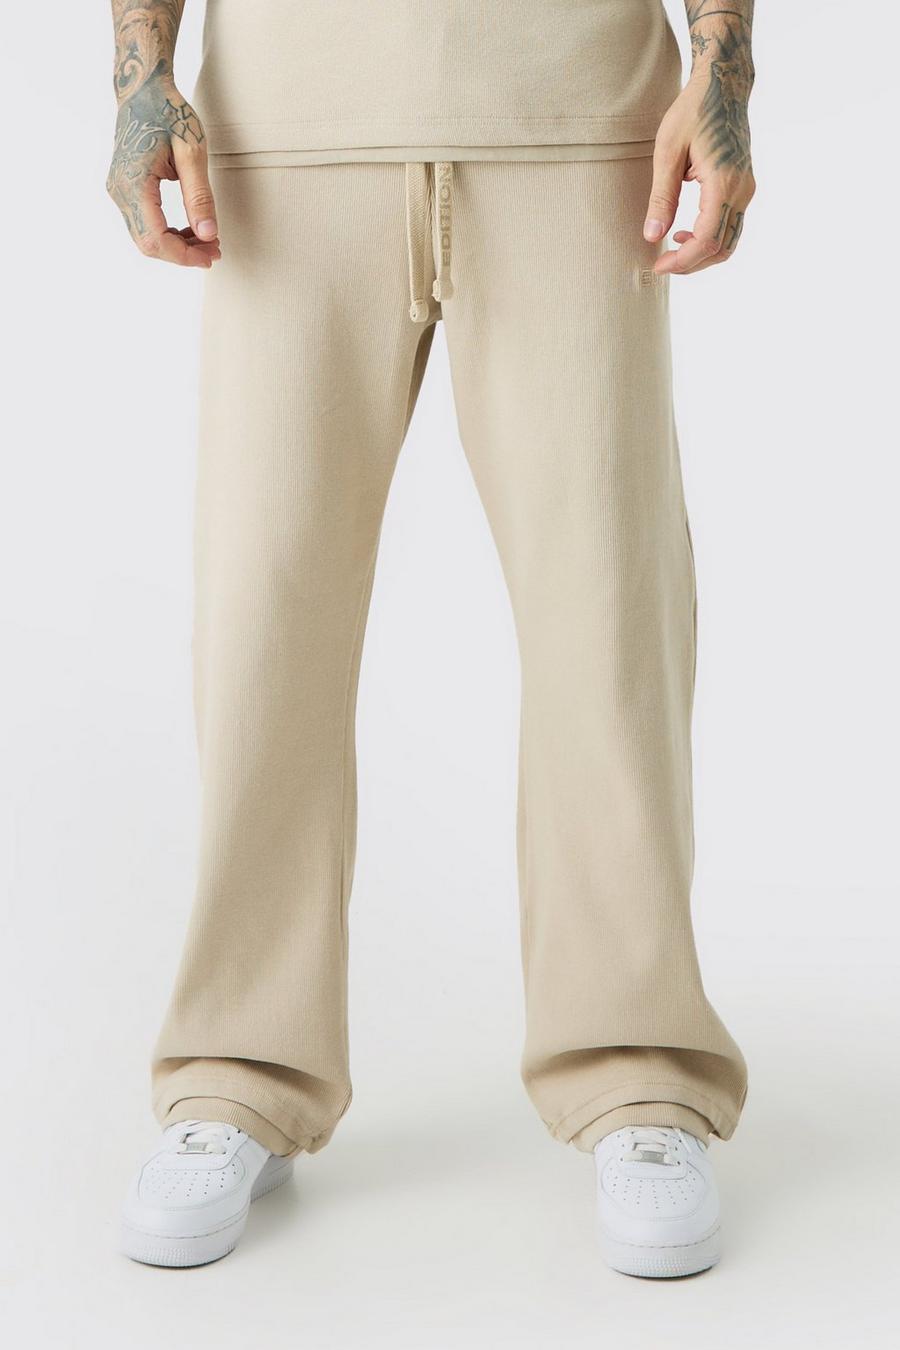 Pantalón deportivo Tall recto de canalé grueso con abertura en el bajo EDITION, Stone